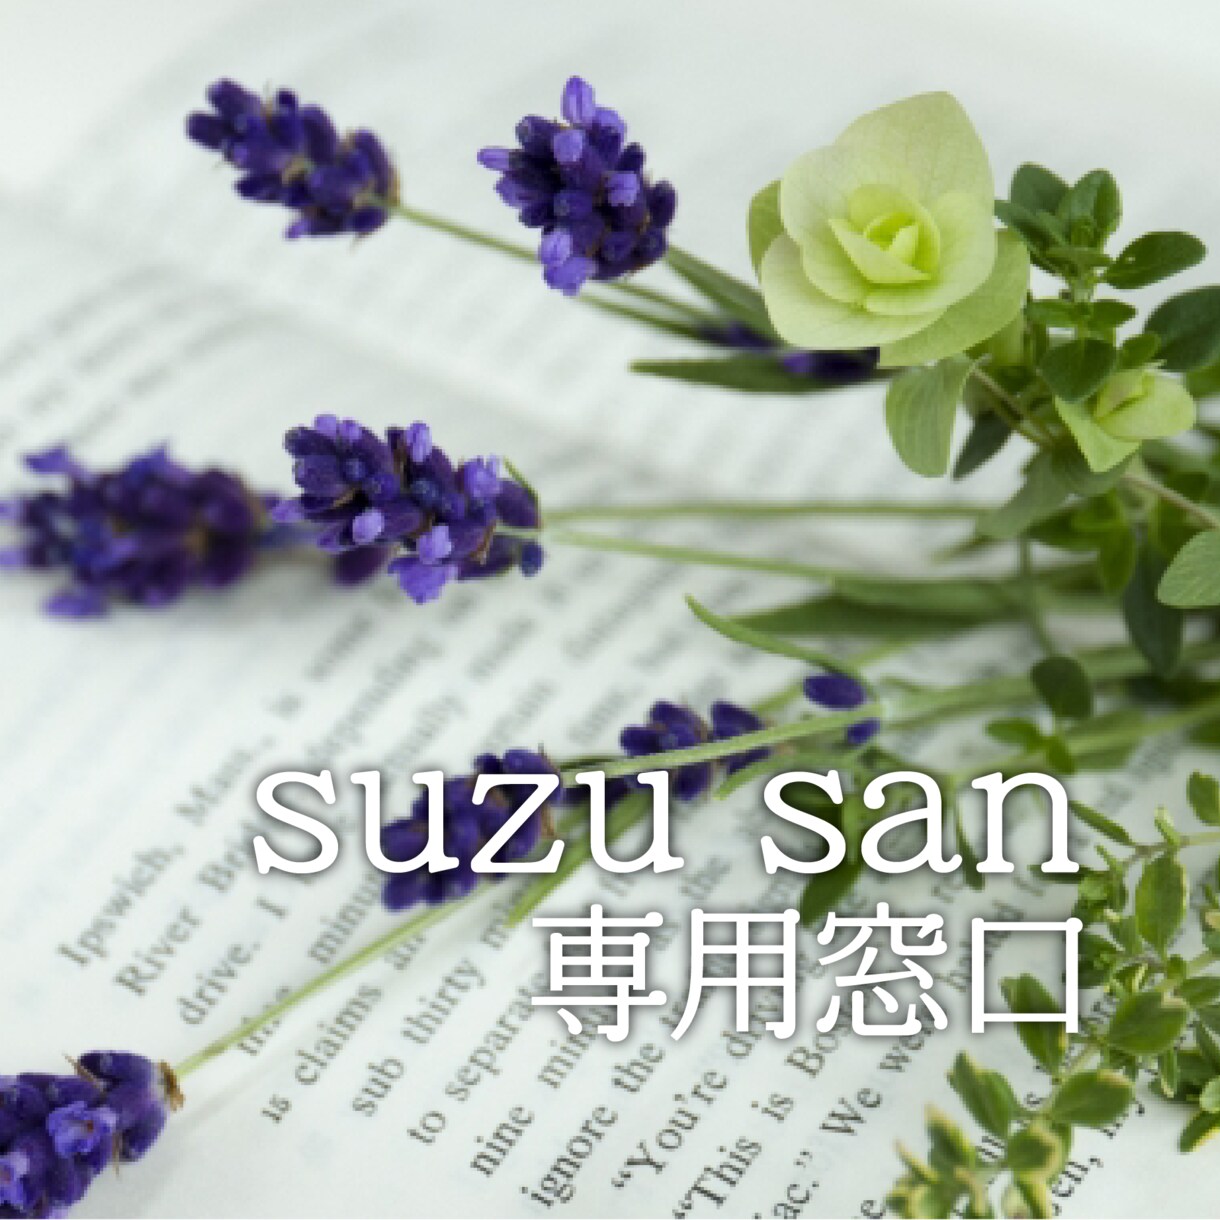 suzu sanさんのためにつくります suzu sanさんだけのオリジナル商品デザインです。 イメージ1